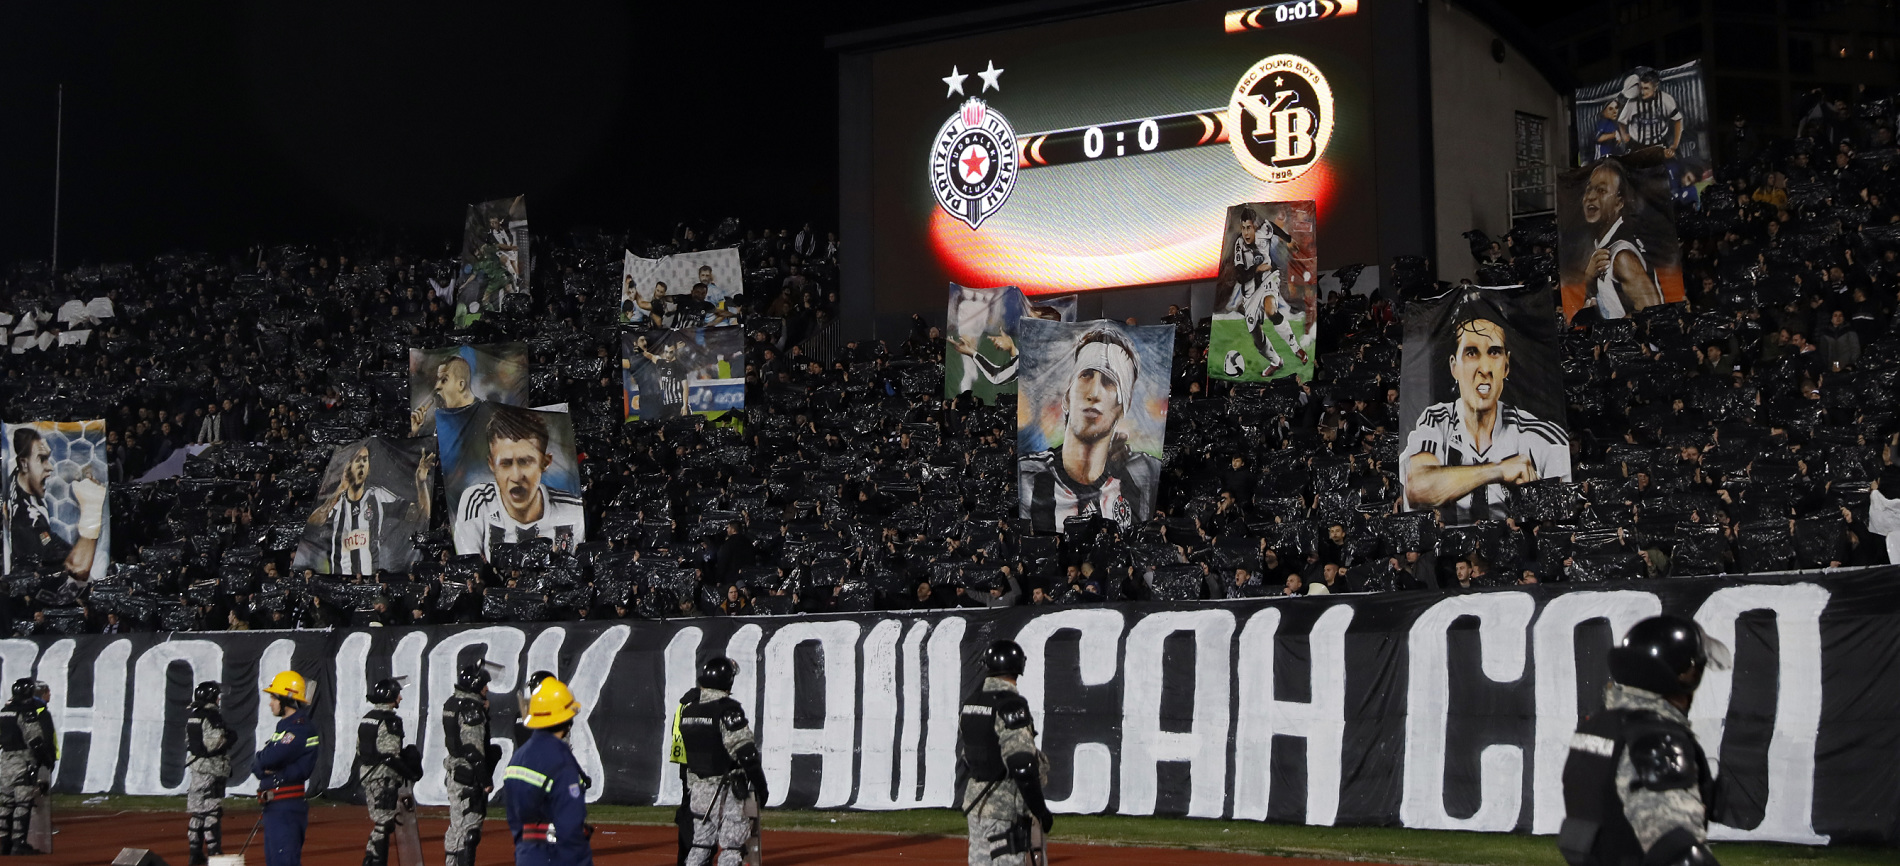 Partizan ispustio bodove i igrao nerešeno sa Radničkim u Humskoj - Sportal